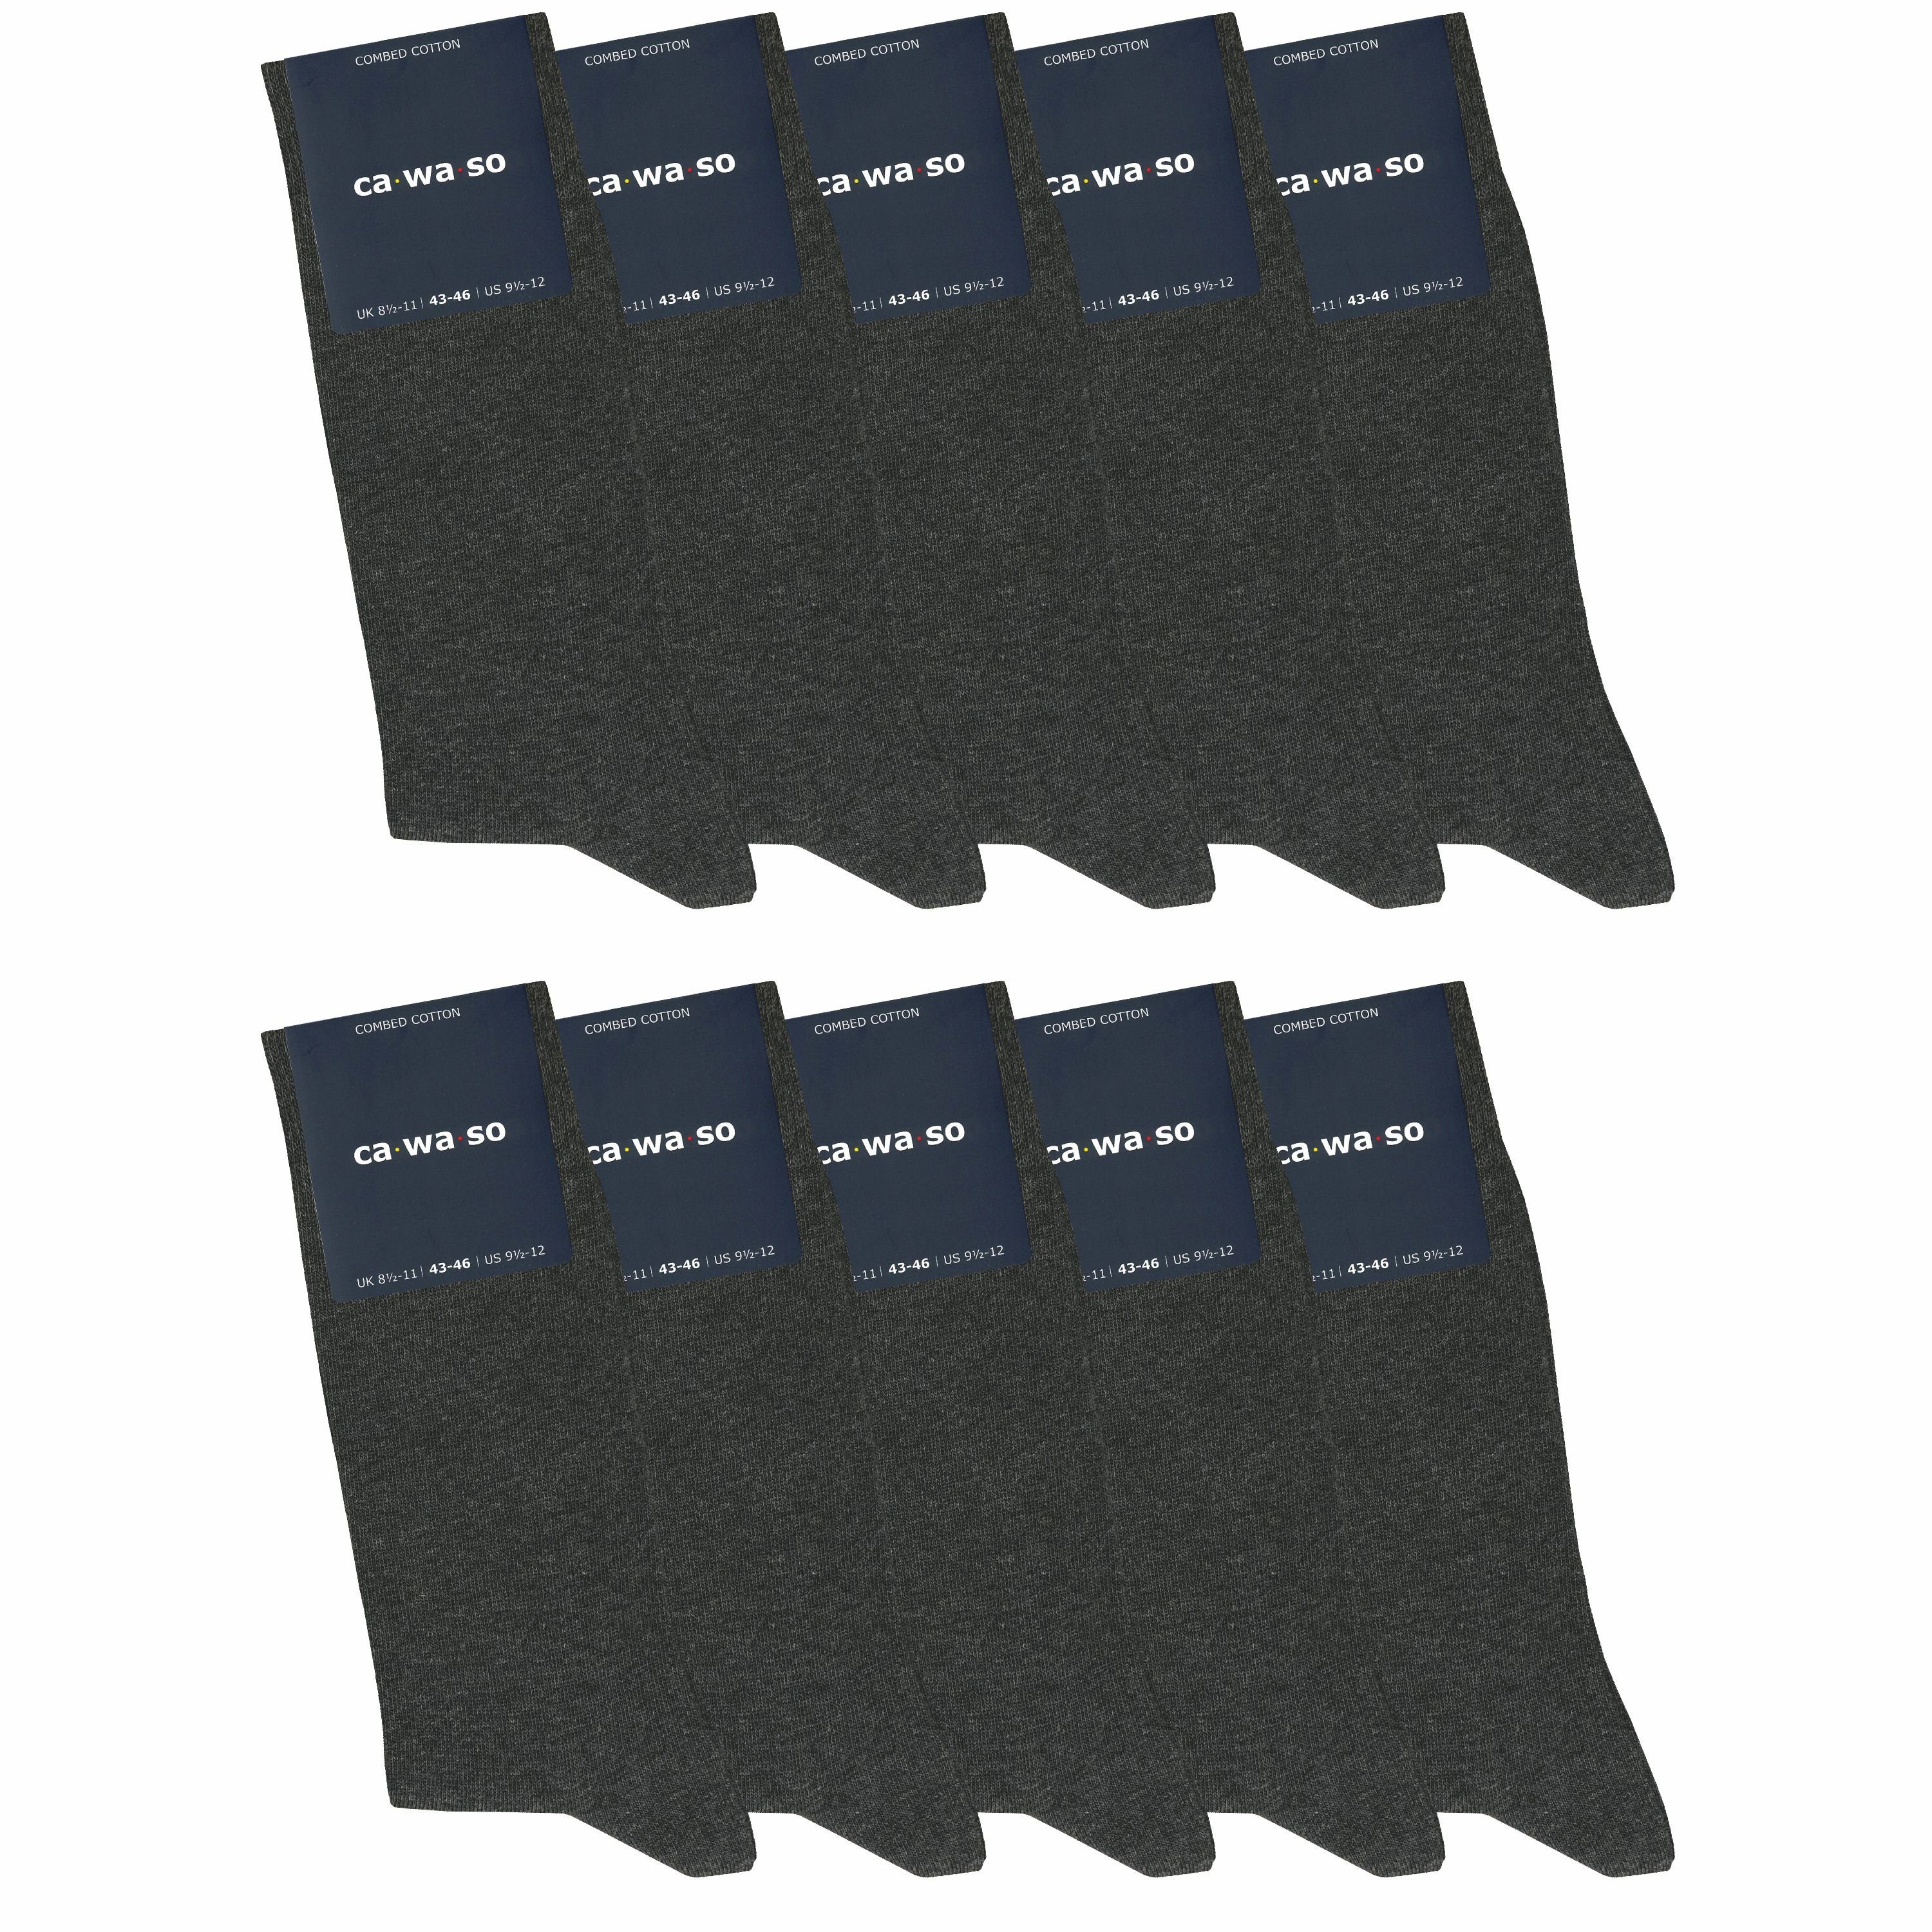 in Farben weich aus & ca·wa·so und - (10 Damen Socken gekämmter Socken für Herren - grau, blau weiteren bequem Baumwolle Paar) anthrazit & bunt, doppelt schwarz,